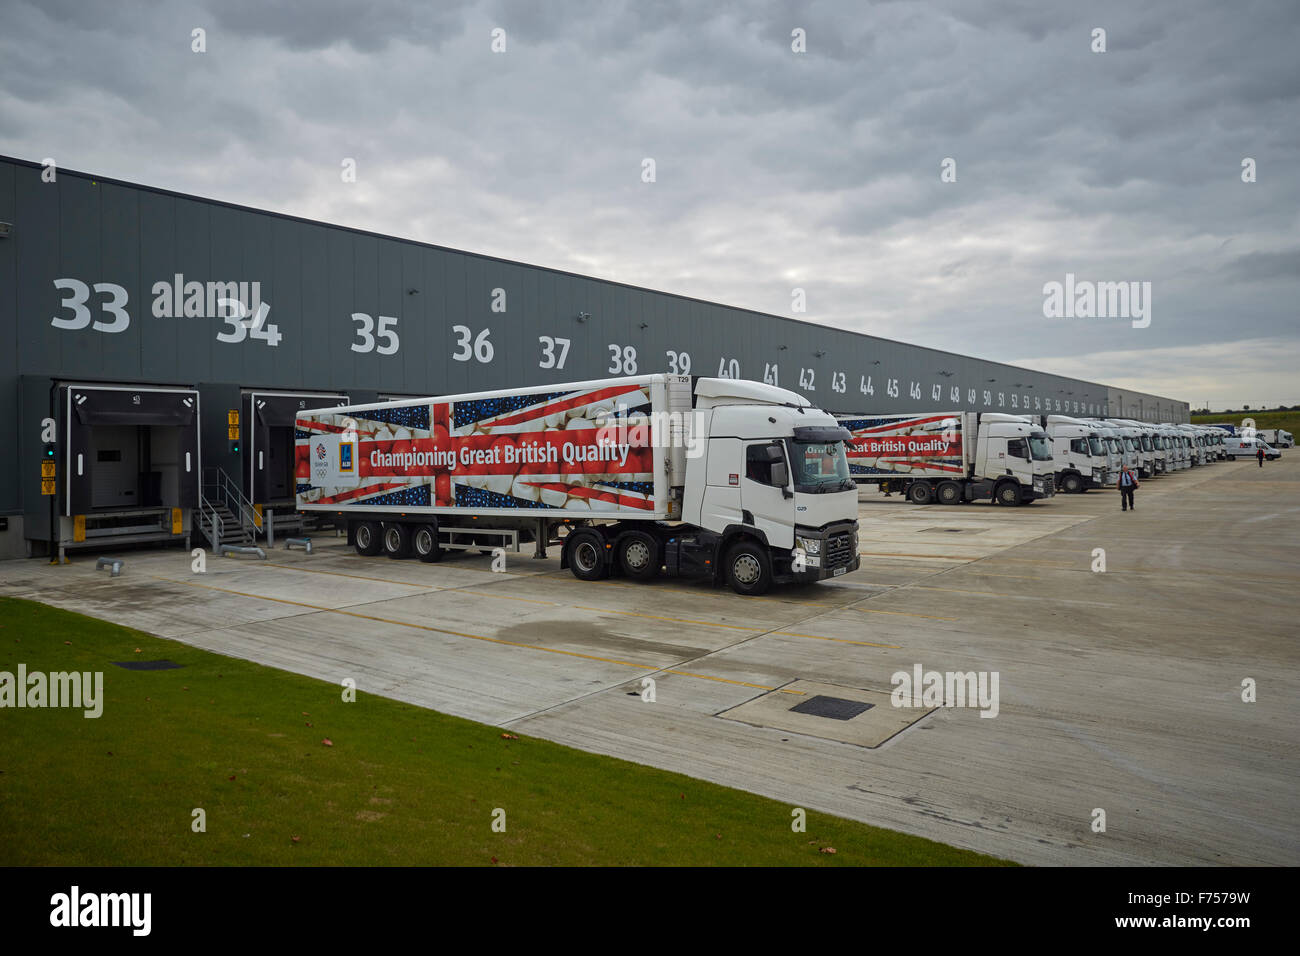 Aldi Bolton entrepôt de distribution chariot extérieur avec les baies de chargement camion garé Banque D'Images